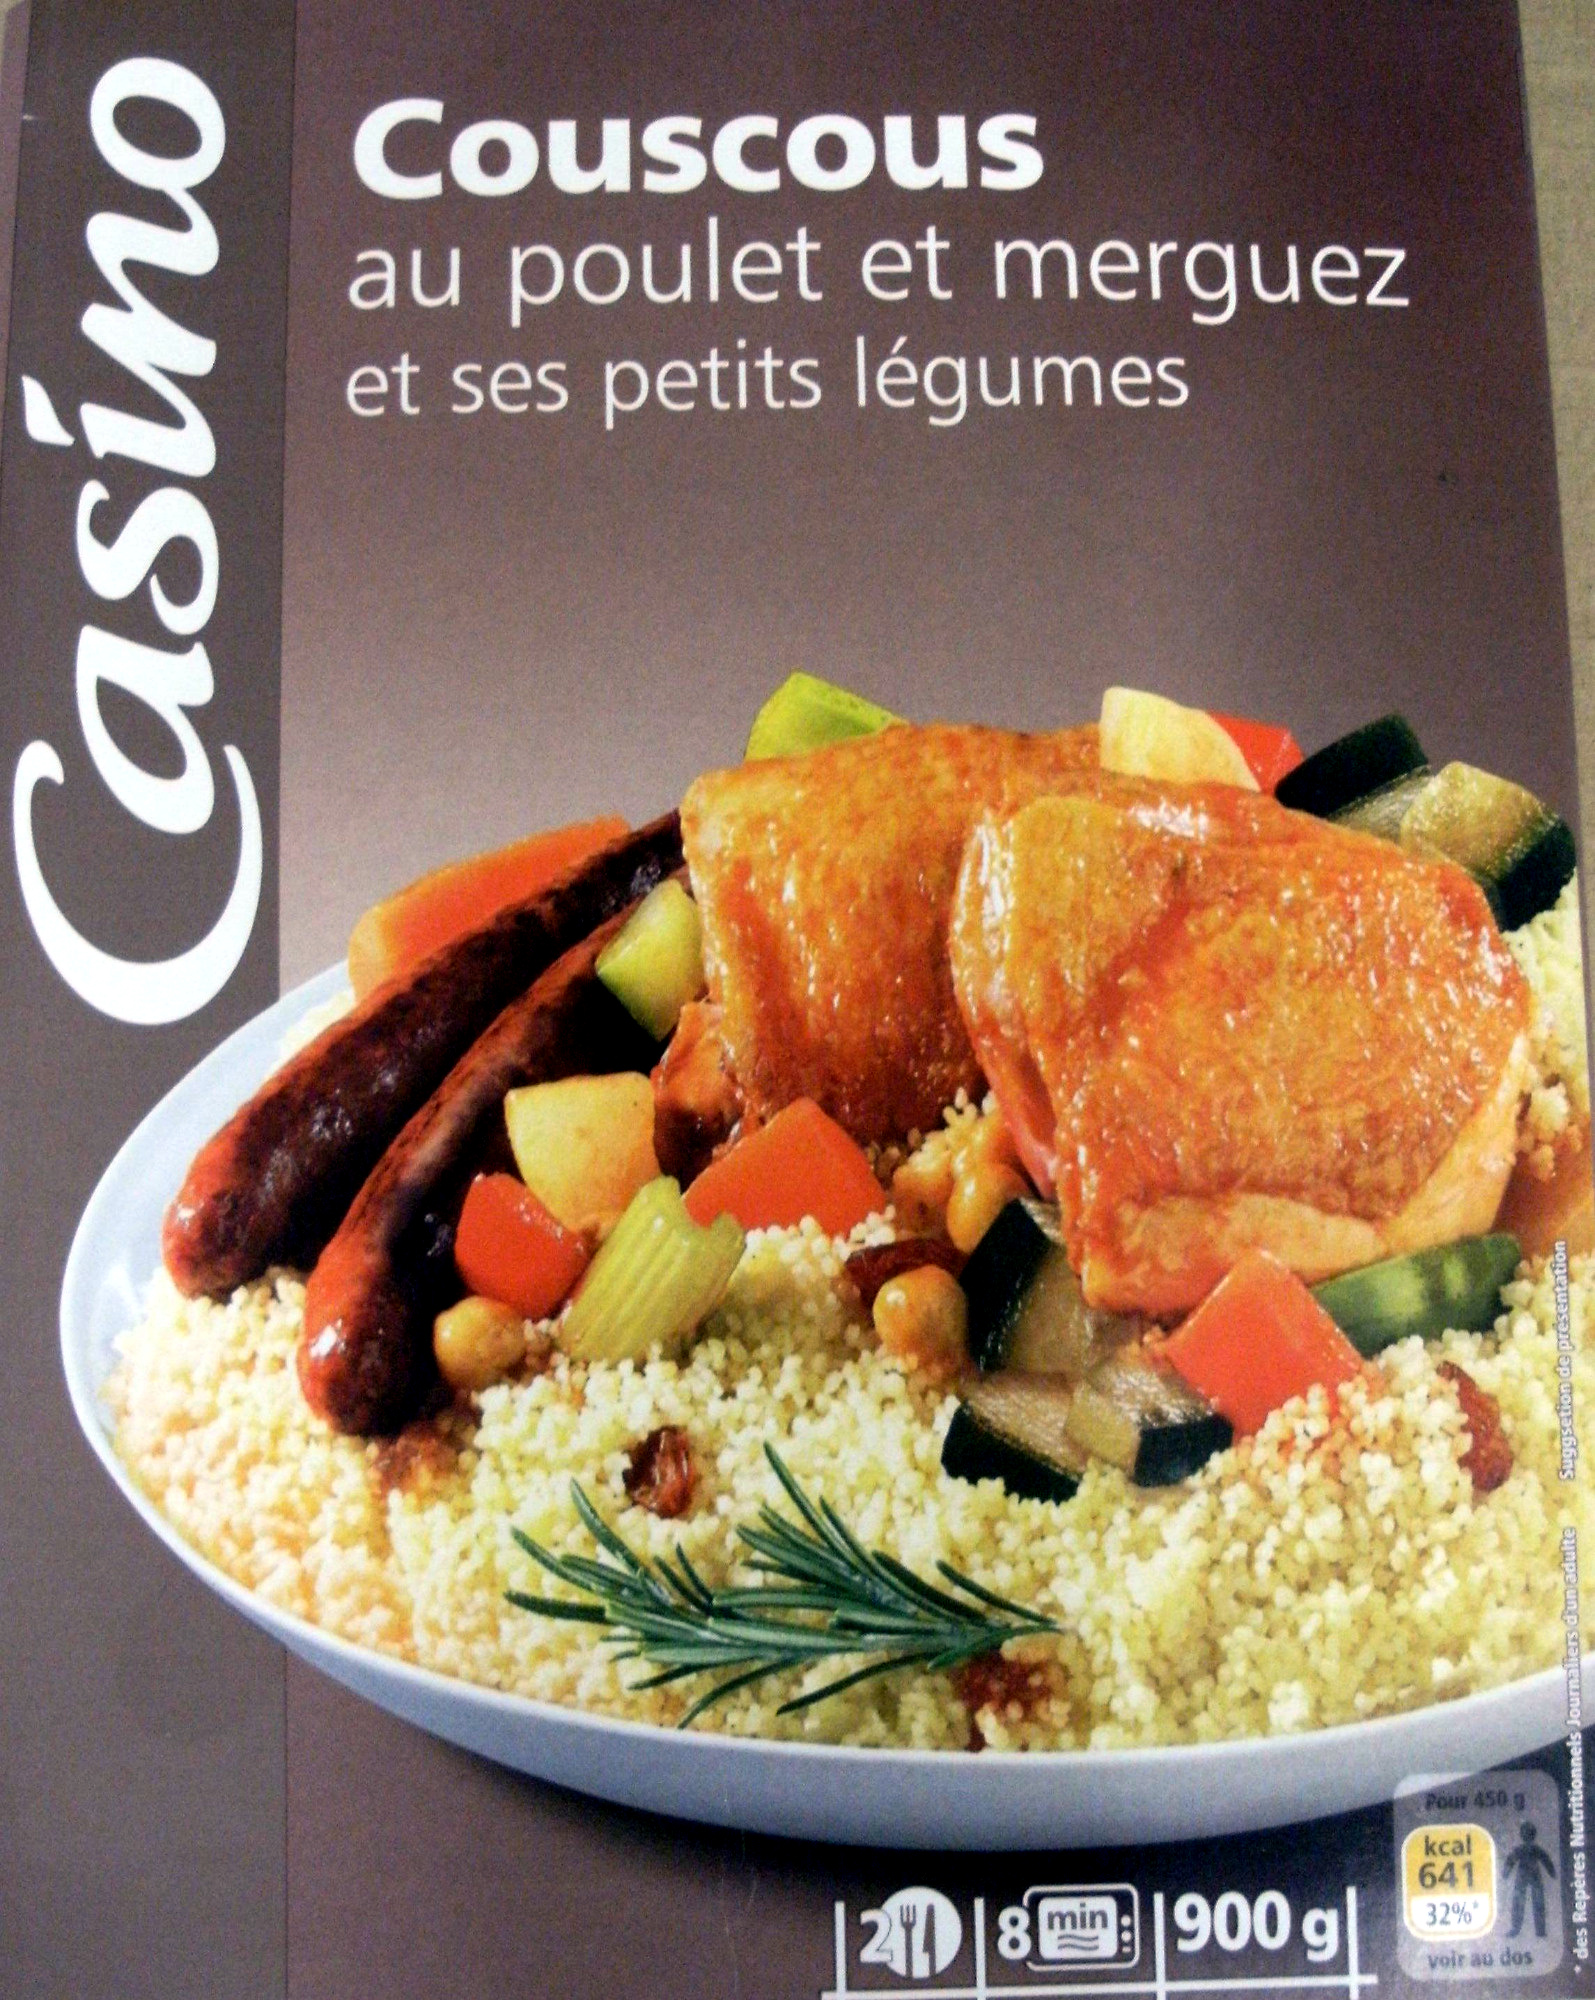 Couscous au poulet et merguez et ses petits légumes (2 portions) - نتاج - fr